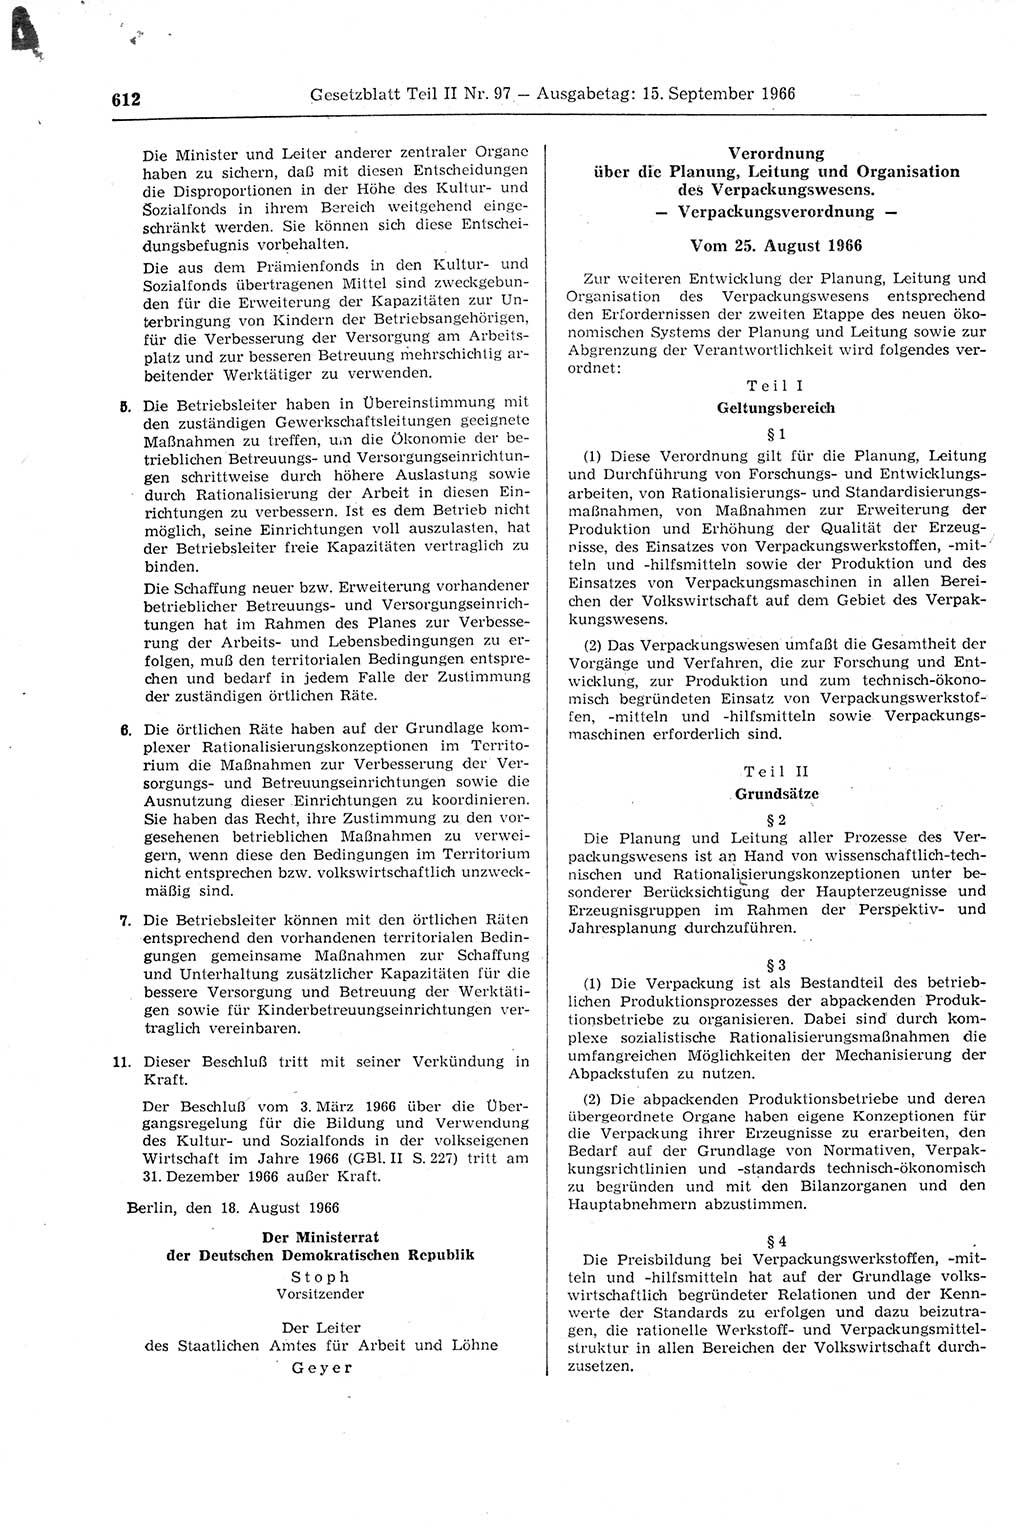 Gesetzblatt (GBl.) der Deutschen Demokratischen Republik (DDR) Teil ⅠⅠ 1966, Seite 612 (GBl. DDR ⅠⅠ 1966, S. 612)